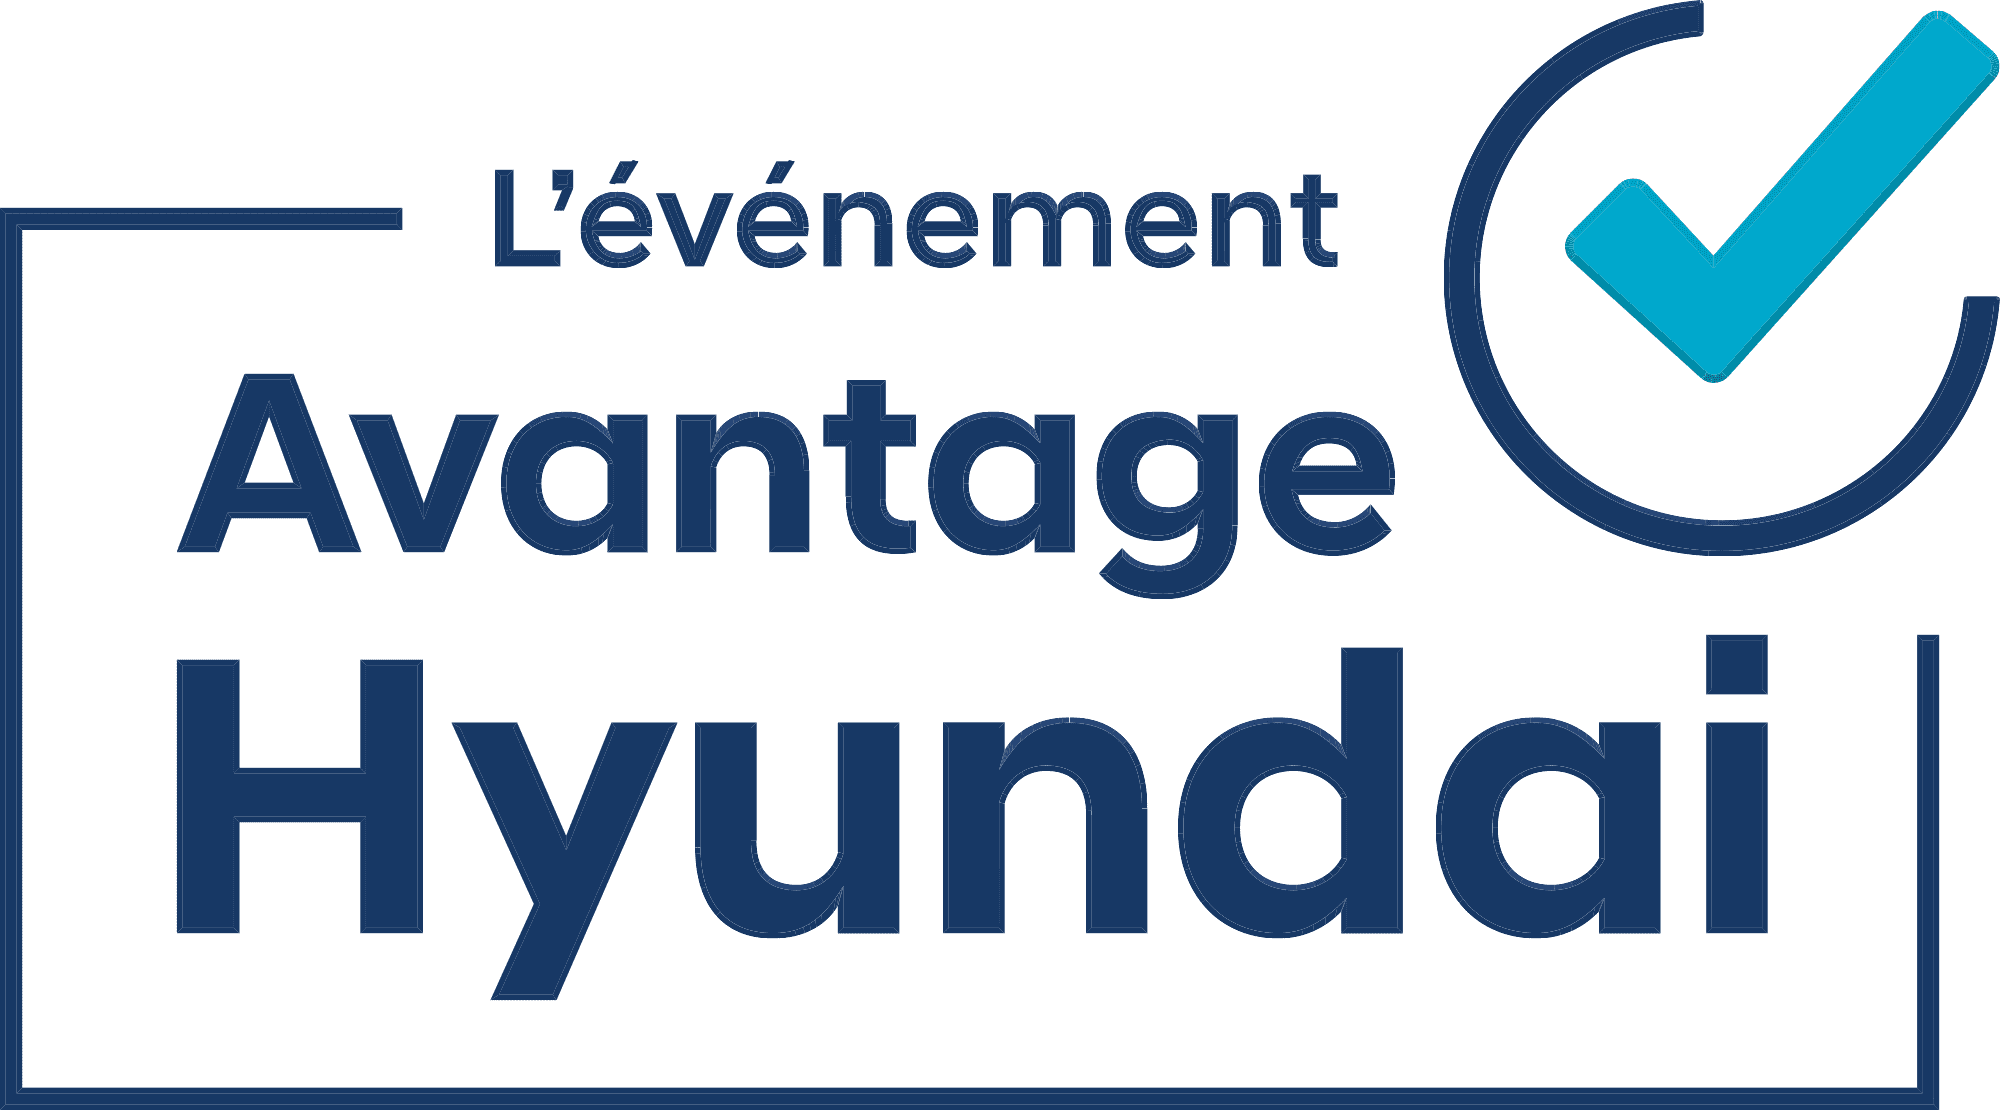 L’événement Avantage Hyundai